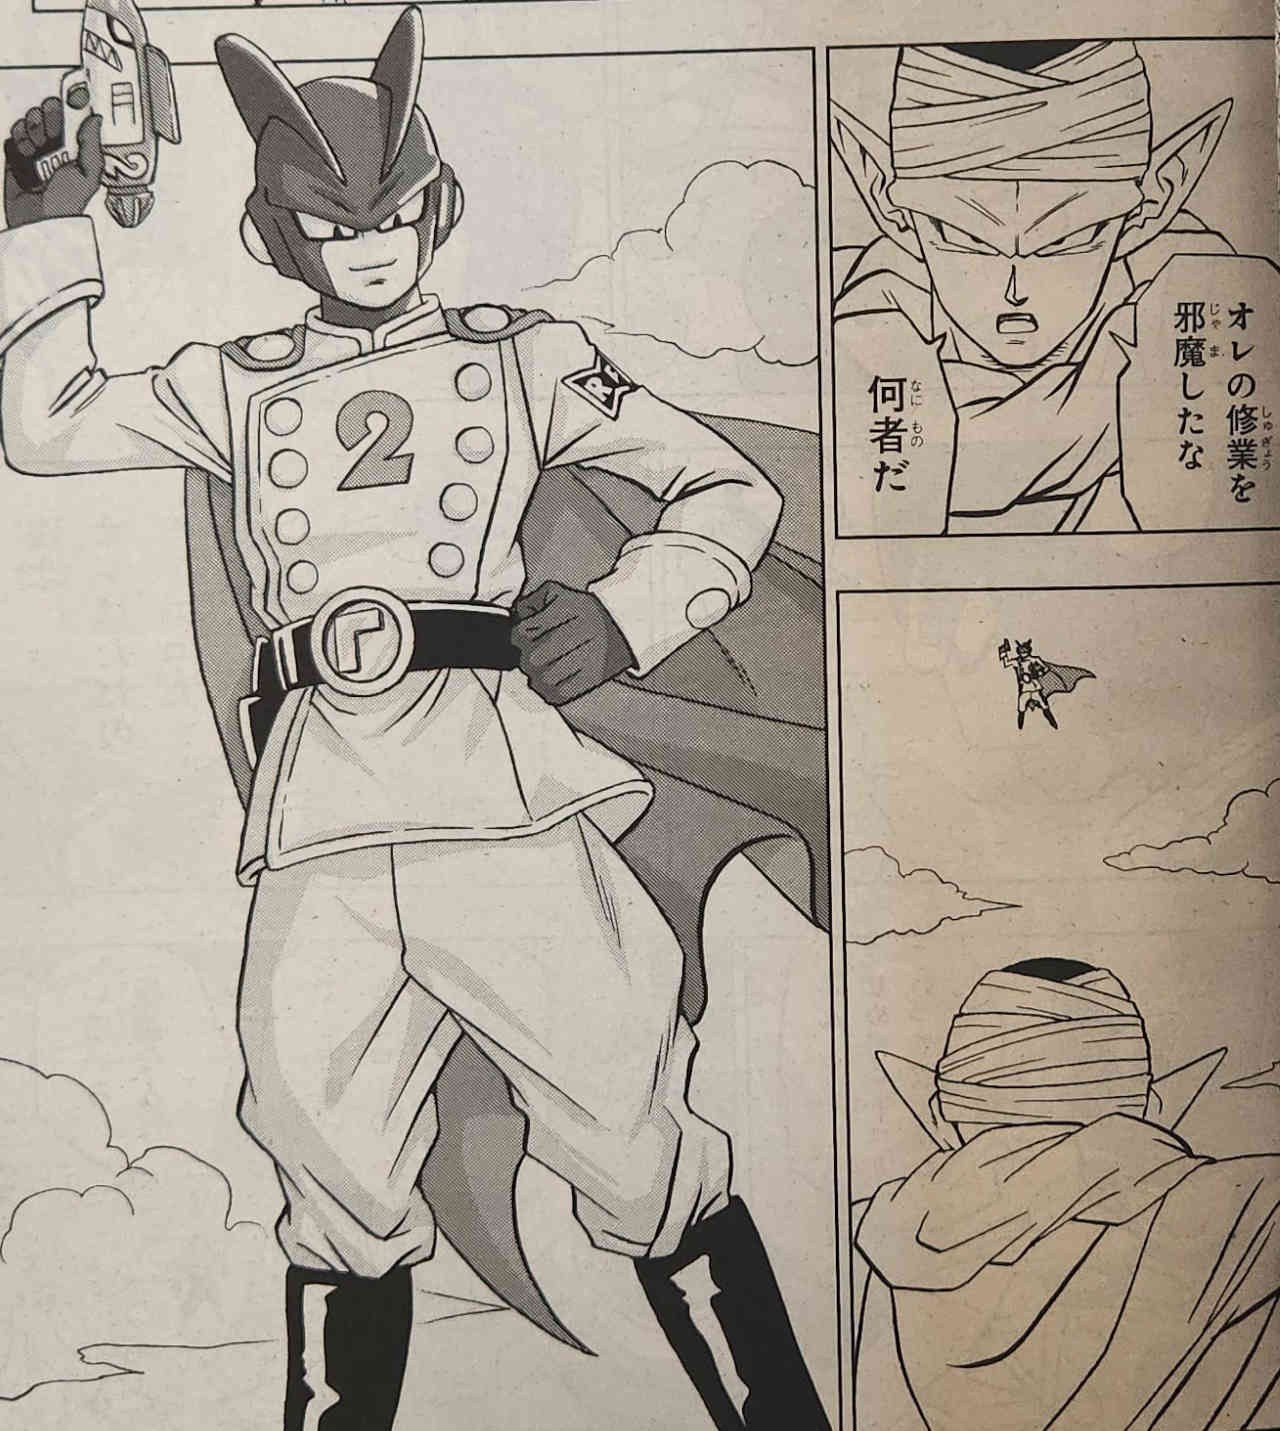 Dragon Ball Super: Filtraciones revelan el arribo de los androides de Super Hero al manga